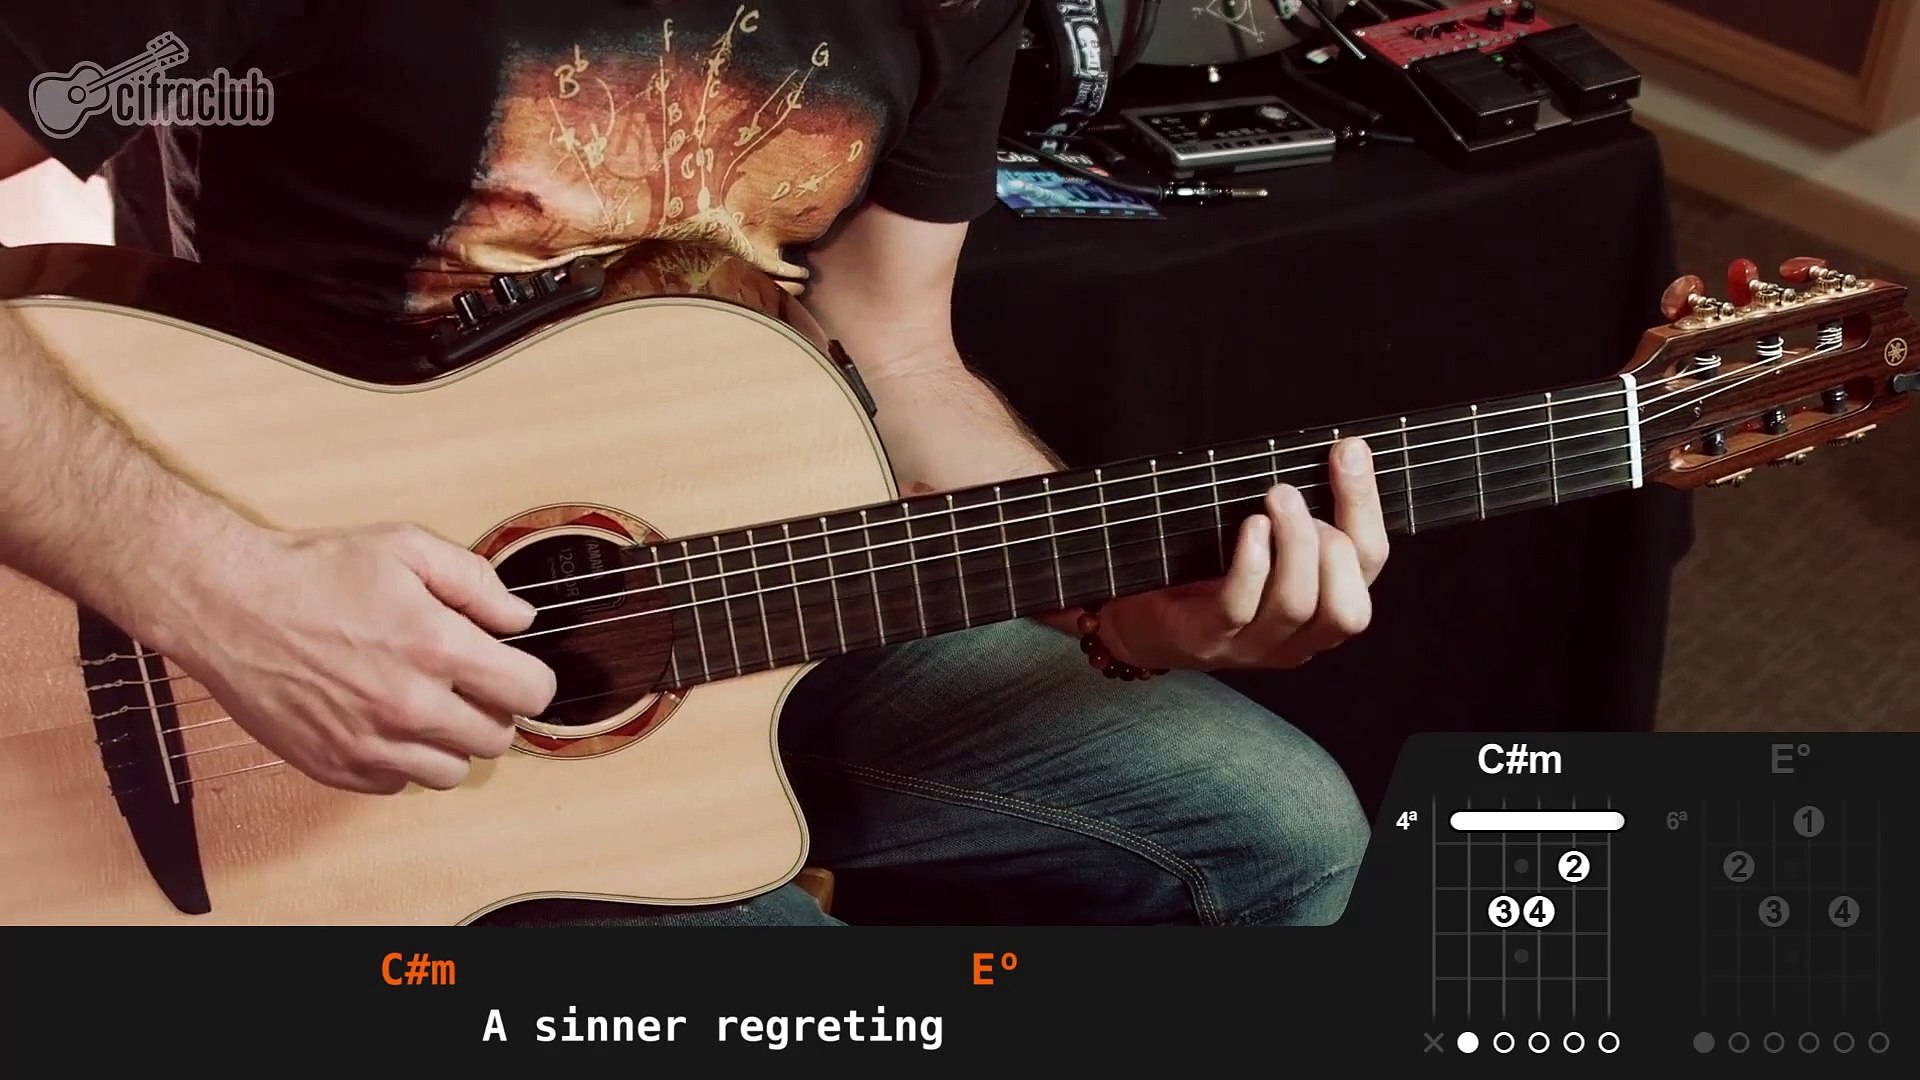 Rebirth - Angra (guitar lesson - aula de violão) - video Dailymotion